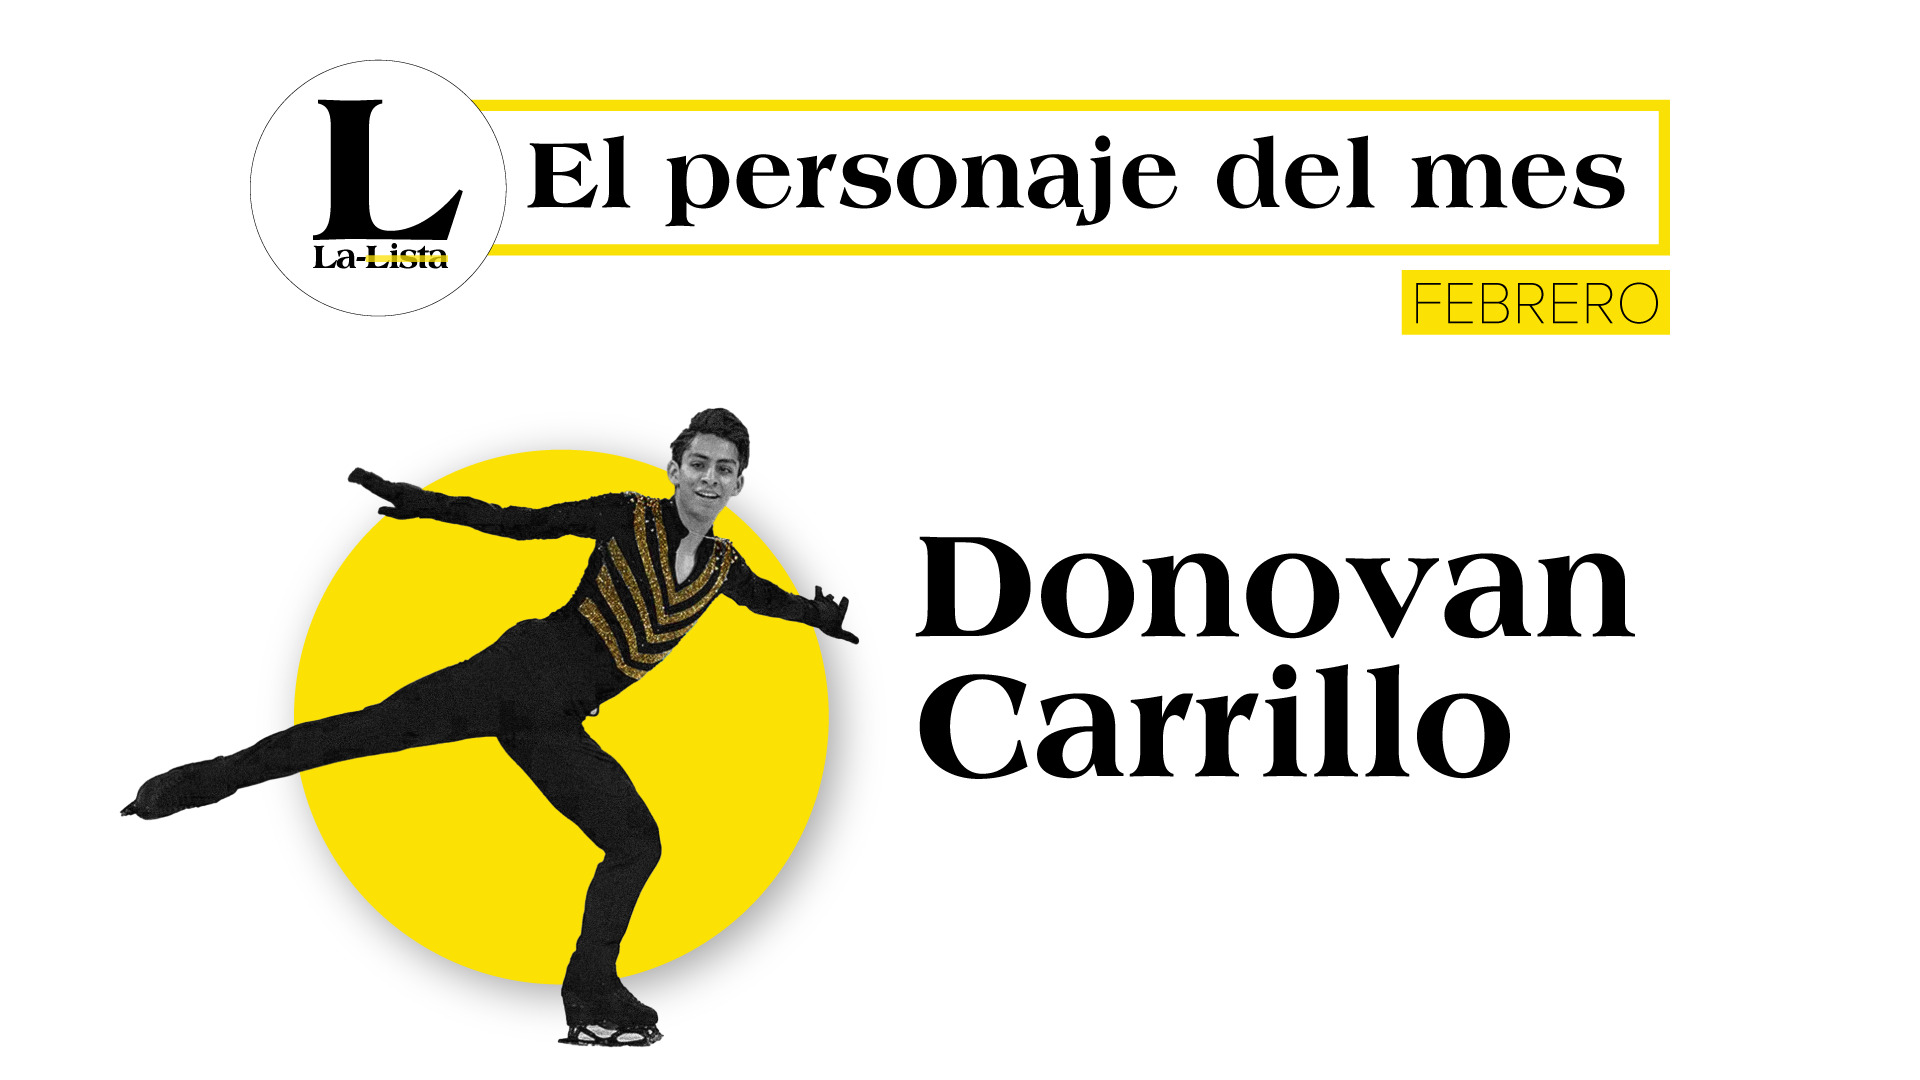 Personaje del mes | Donovan Carrillo, el sol mexicano en el invierno de Beijing 2022